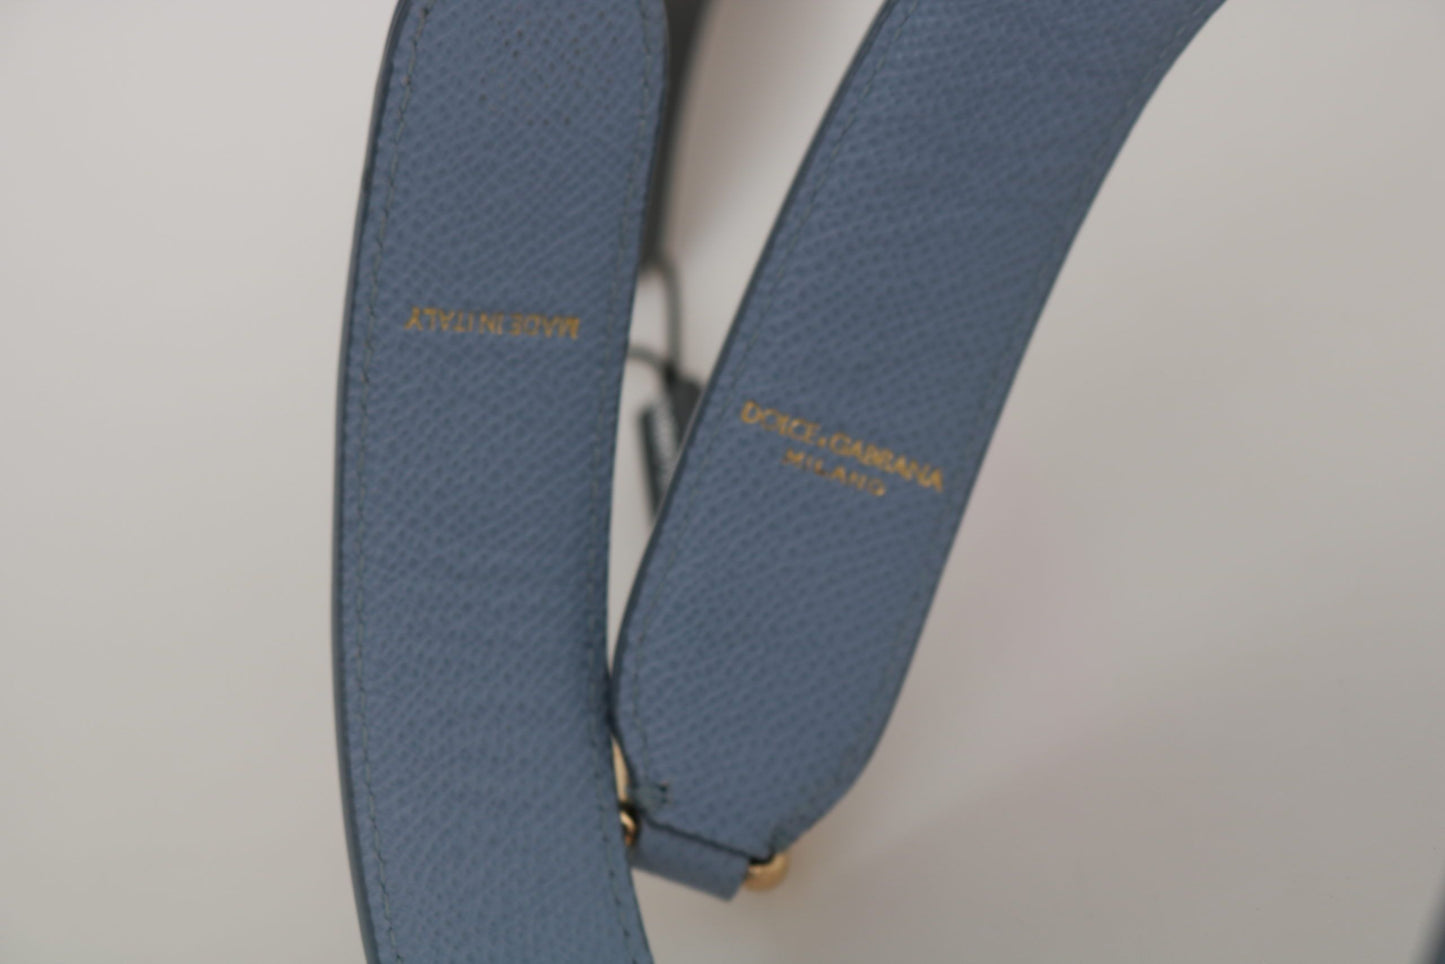 Dolce & Gabbana Blue Leather Handbag Accessory Shoulder Strap